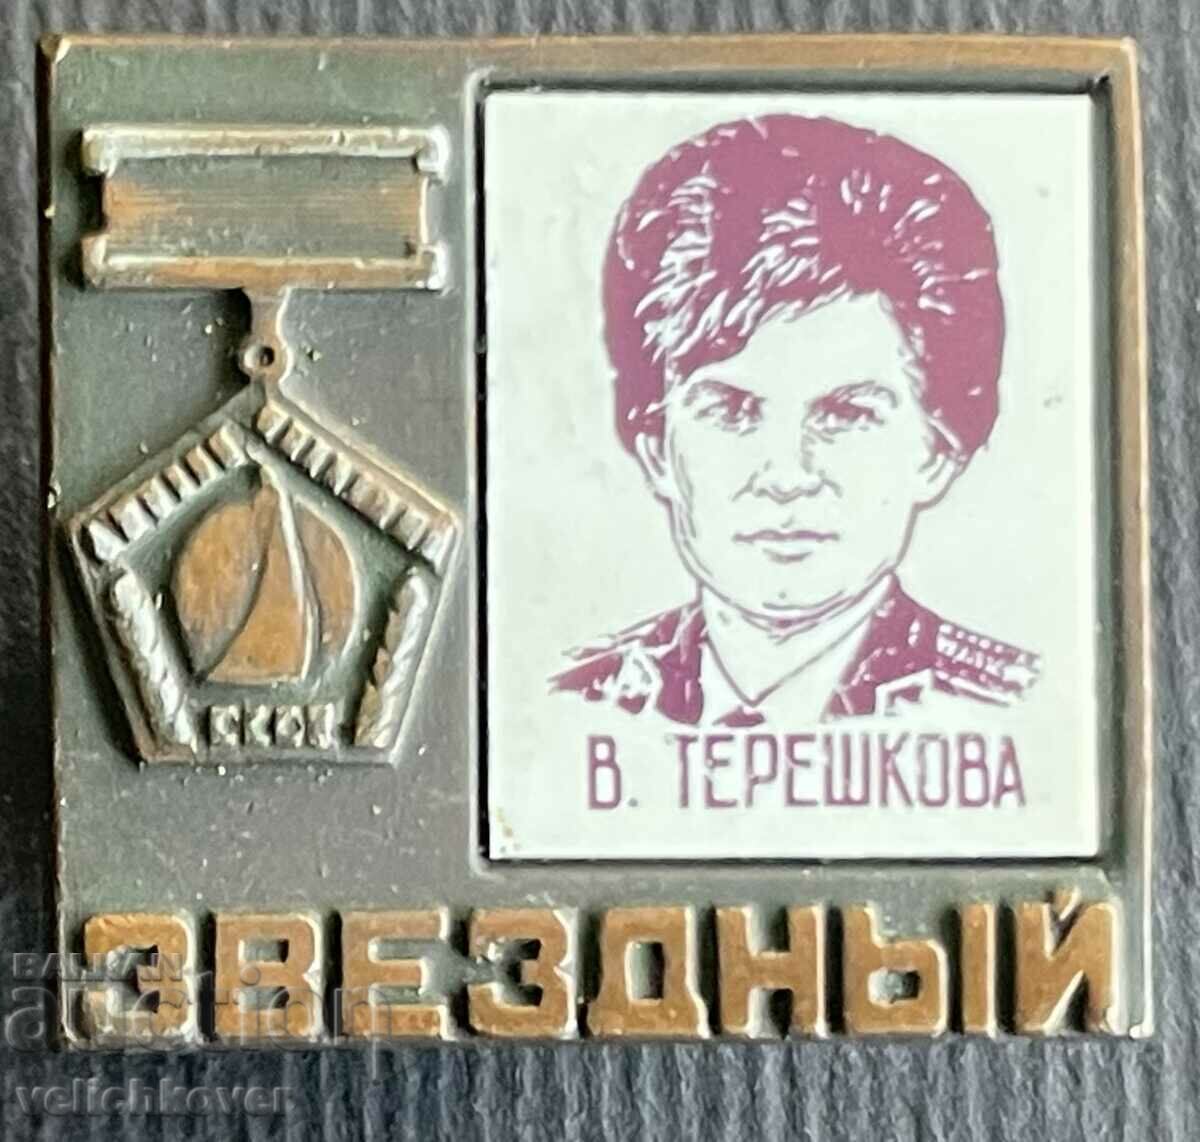 36103 διαστημικό σημάδι της ΕΣΣΔ η πρώτη γυναίκα κοσμοναύτης V. Tereshkova